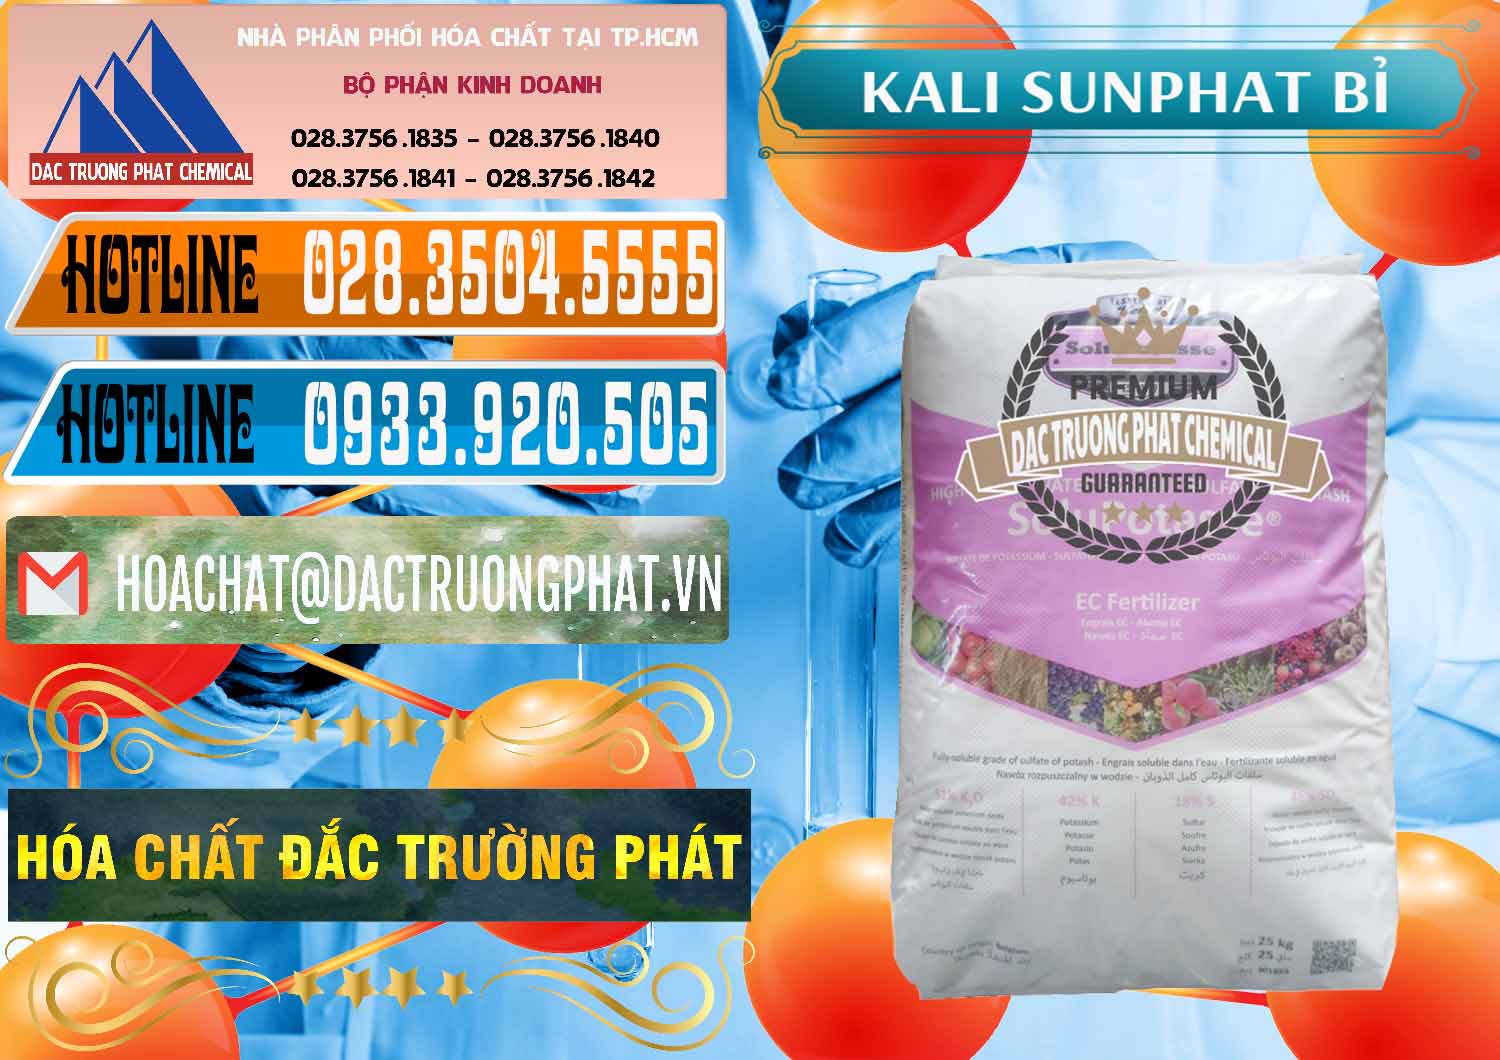 Cung cấp - bán Kali Sunphat – K2SO4 Bỉ Belgium - 0406 - Chuyên cung cấp & bán hóa chất tại TP.HCM - stmp.net